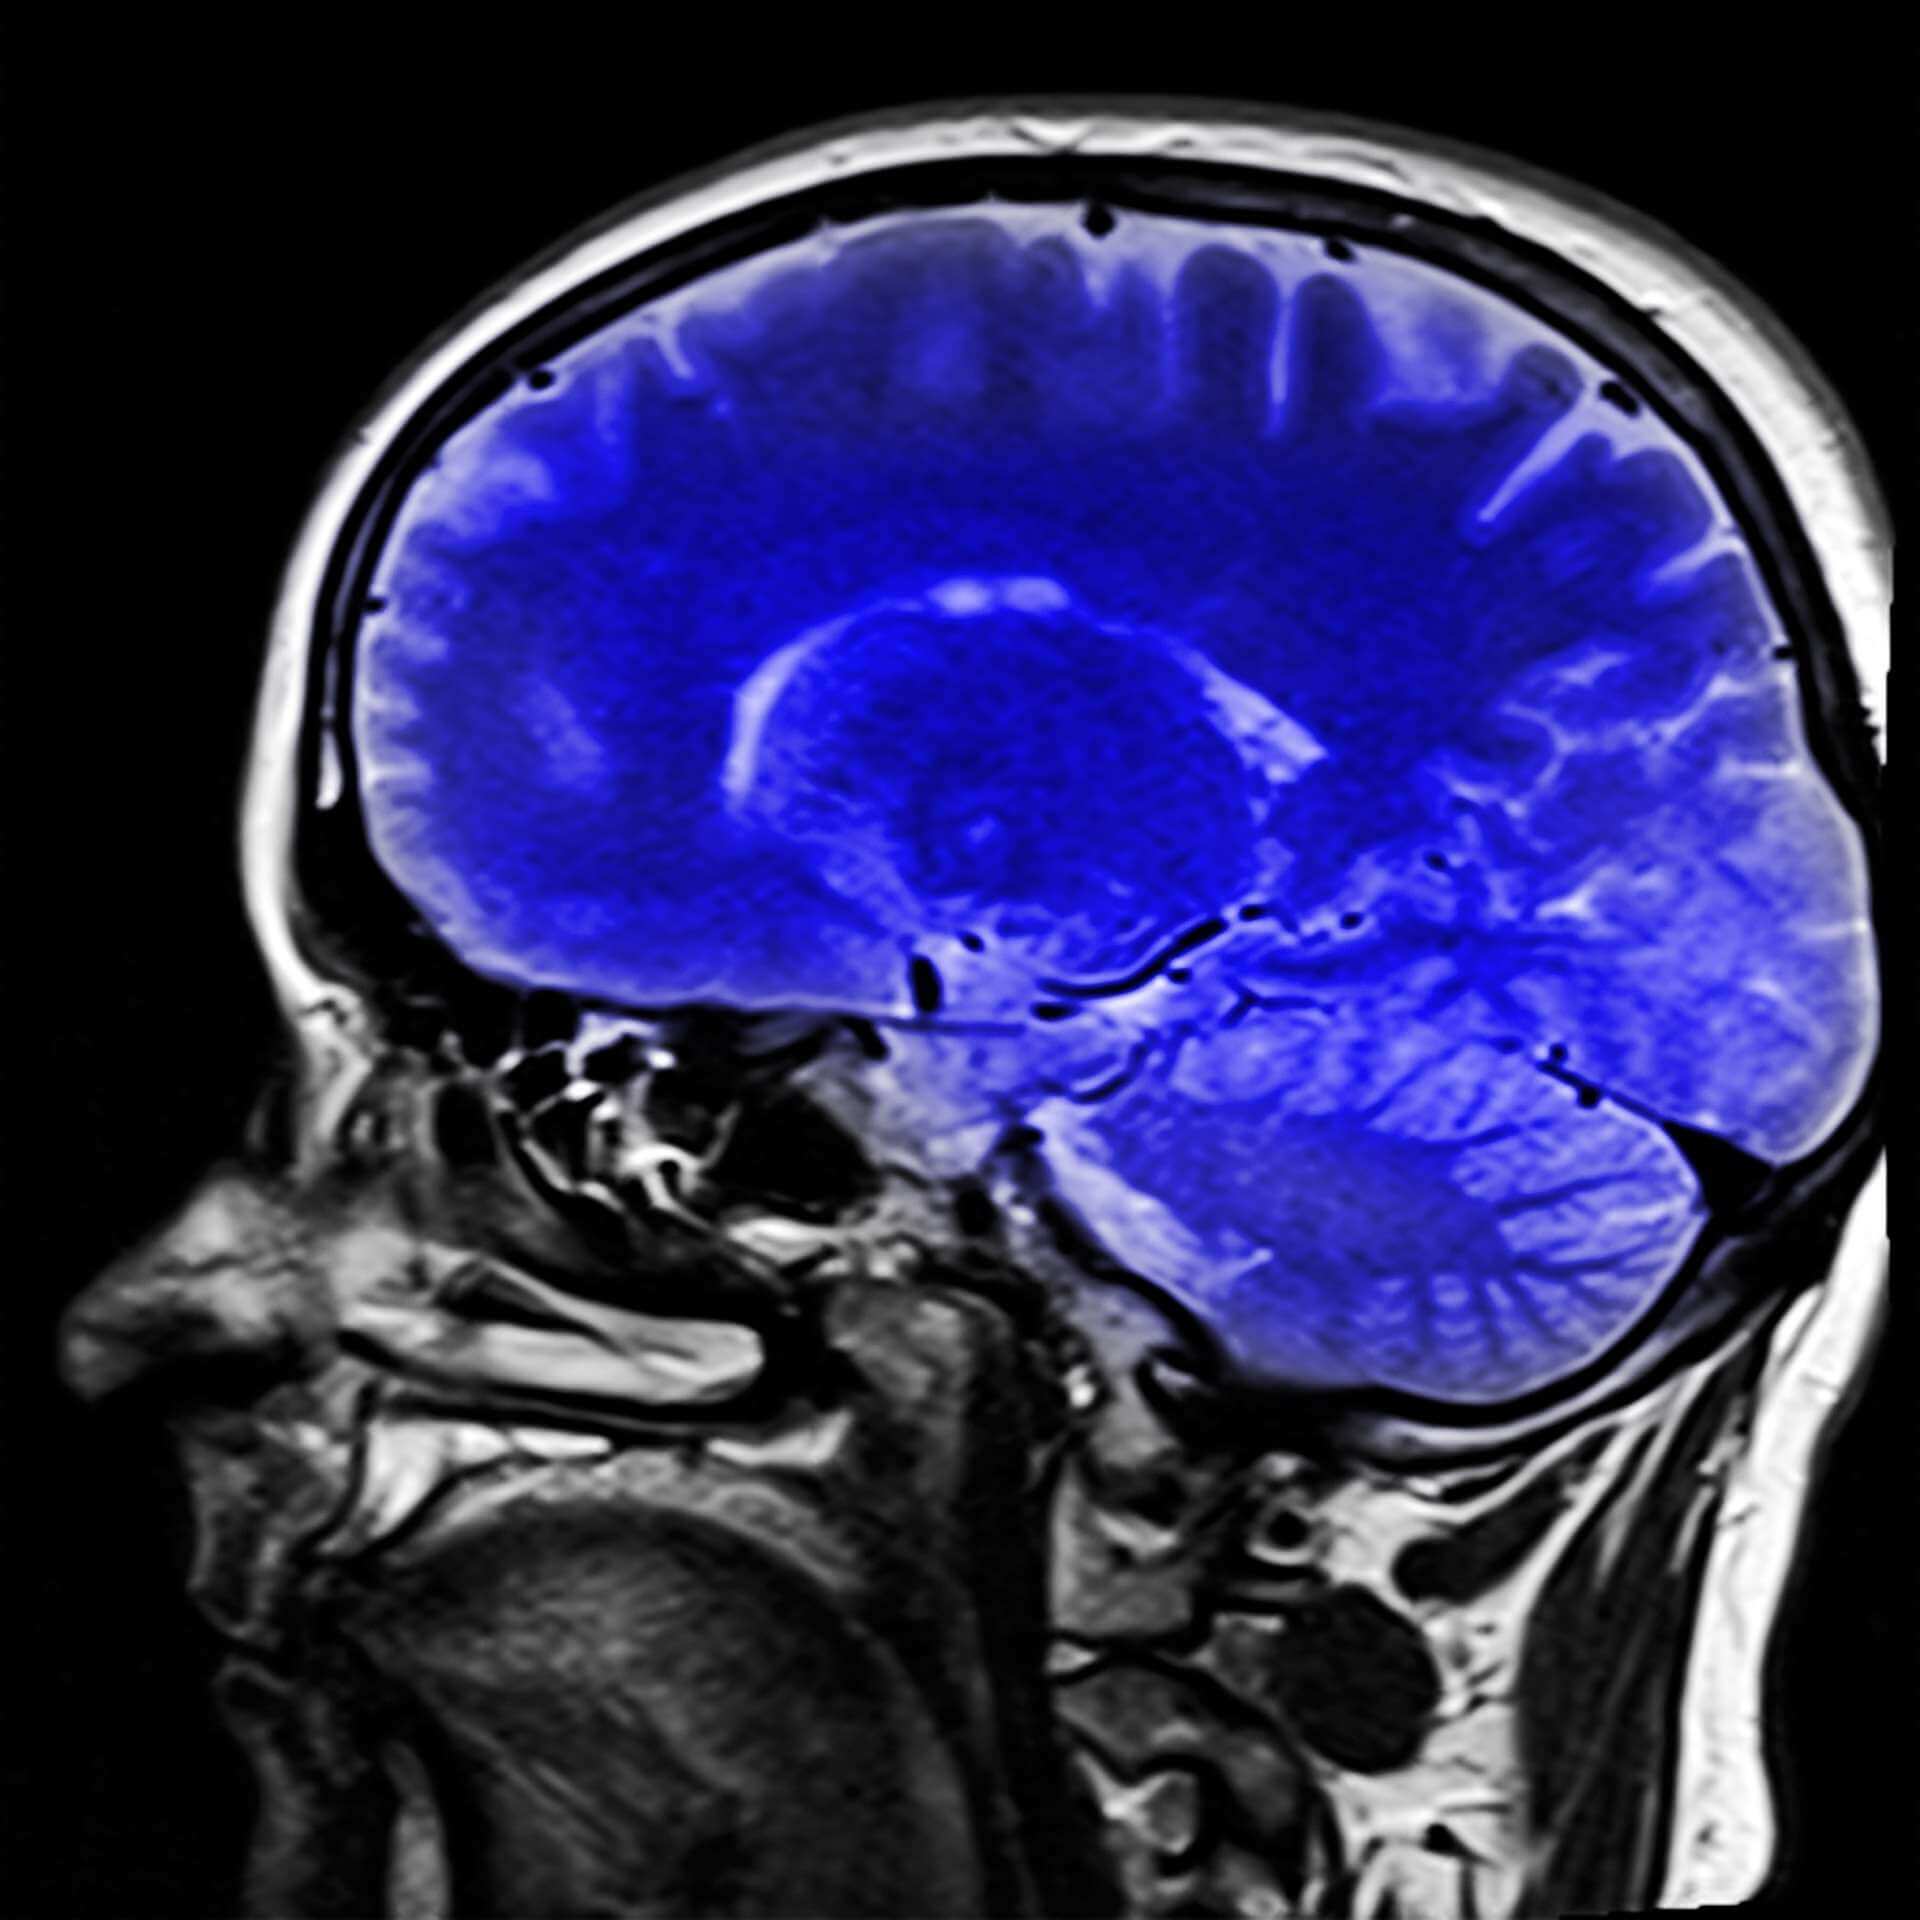 Cliché du cerveau obtenu par IRM. Kai Stachowiak